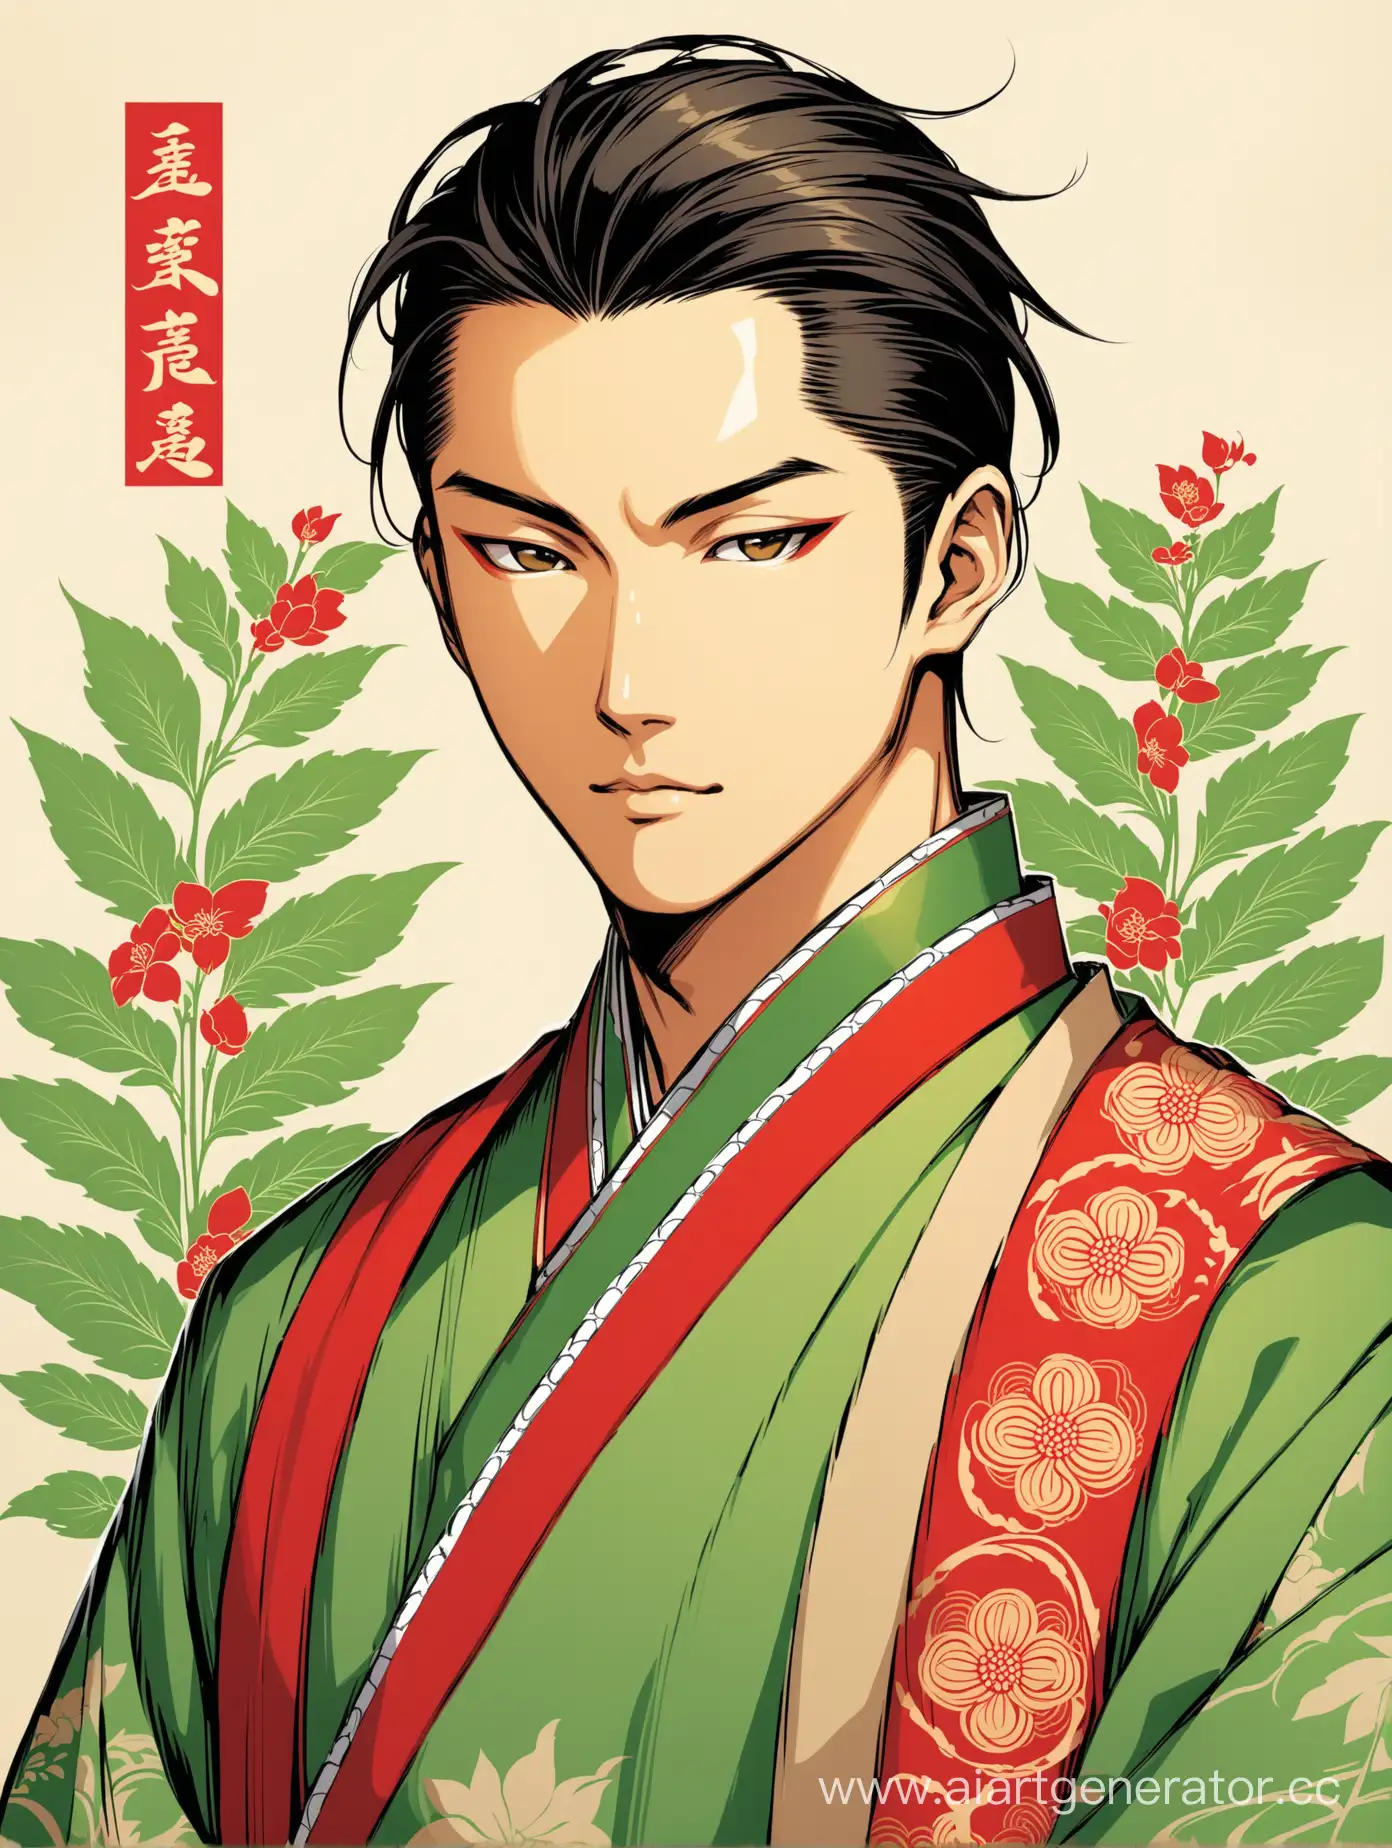 красивый азиатский мужчина в стиле традиционной азиатской графики, в салатово-зелёно-бежевых оттенках, с красными акцентами